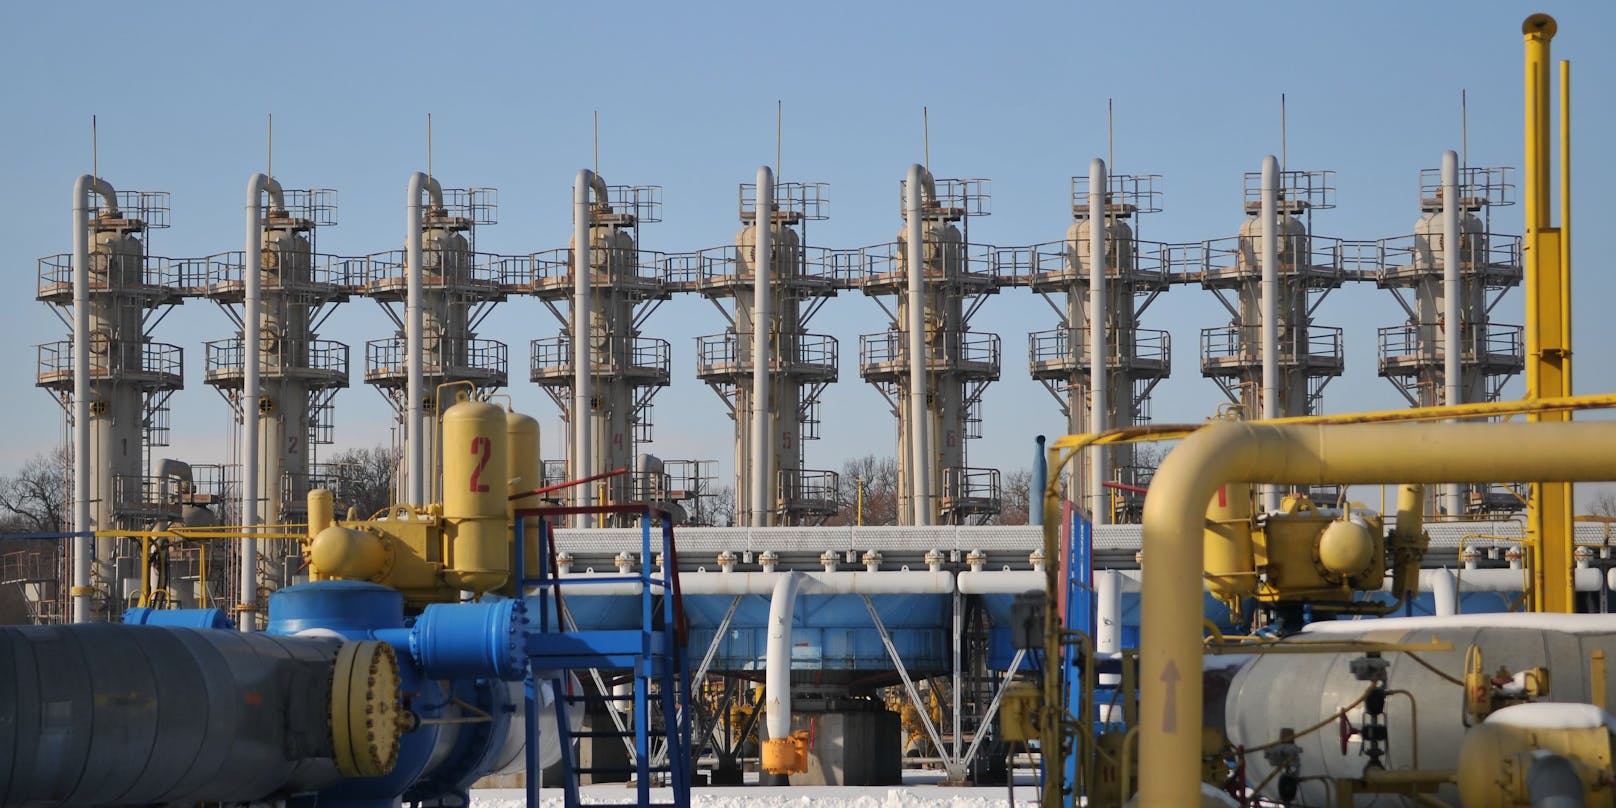 Durch die ukrainischen Pipelines wird wohl bald kein Gas mehr fließen. (Symbolbild)